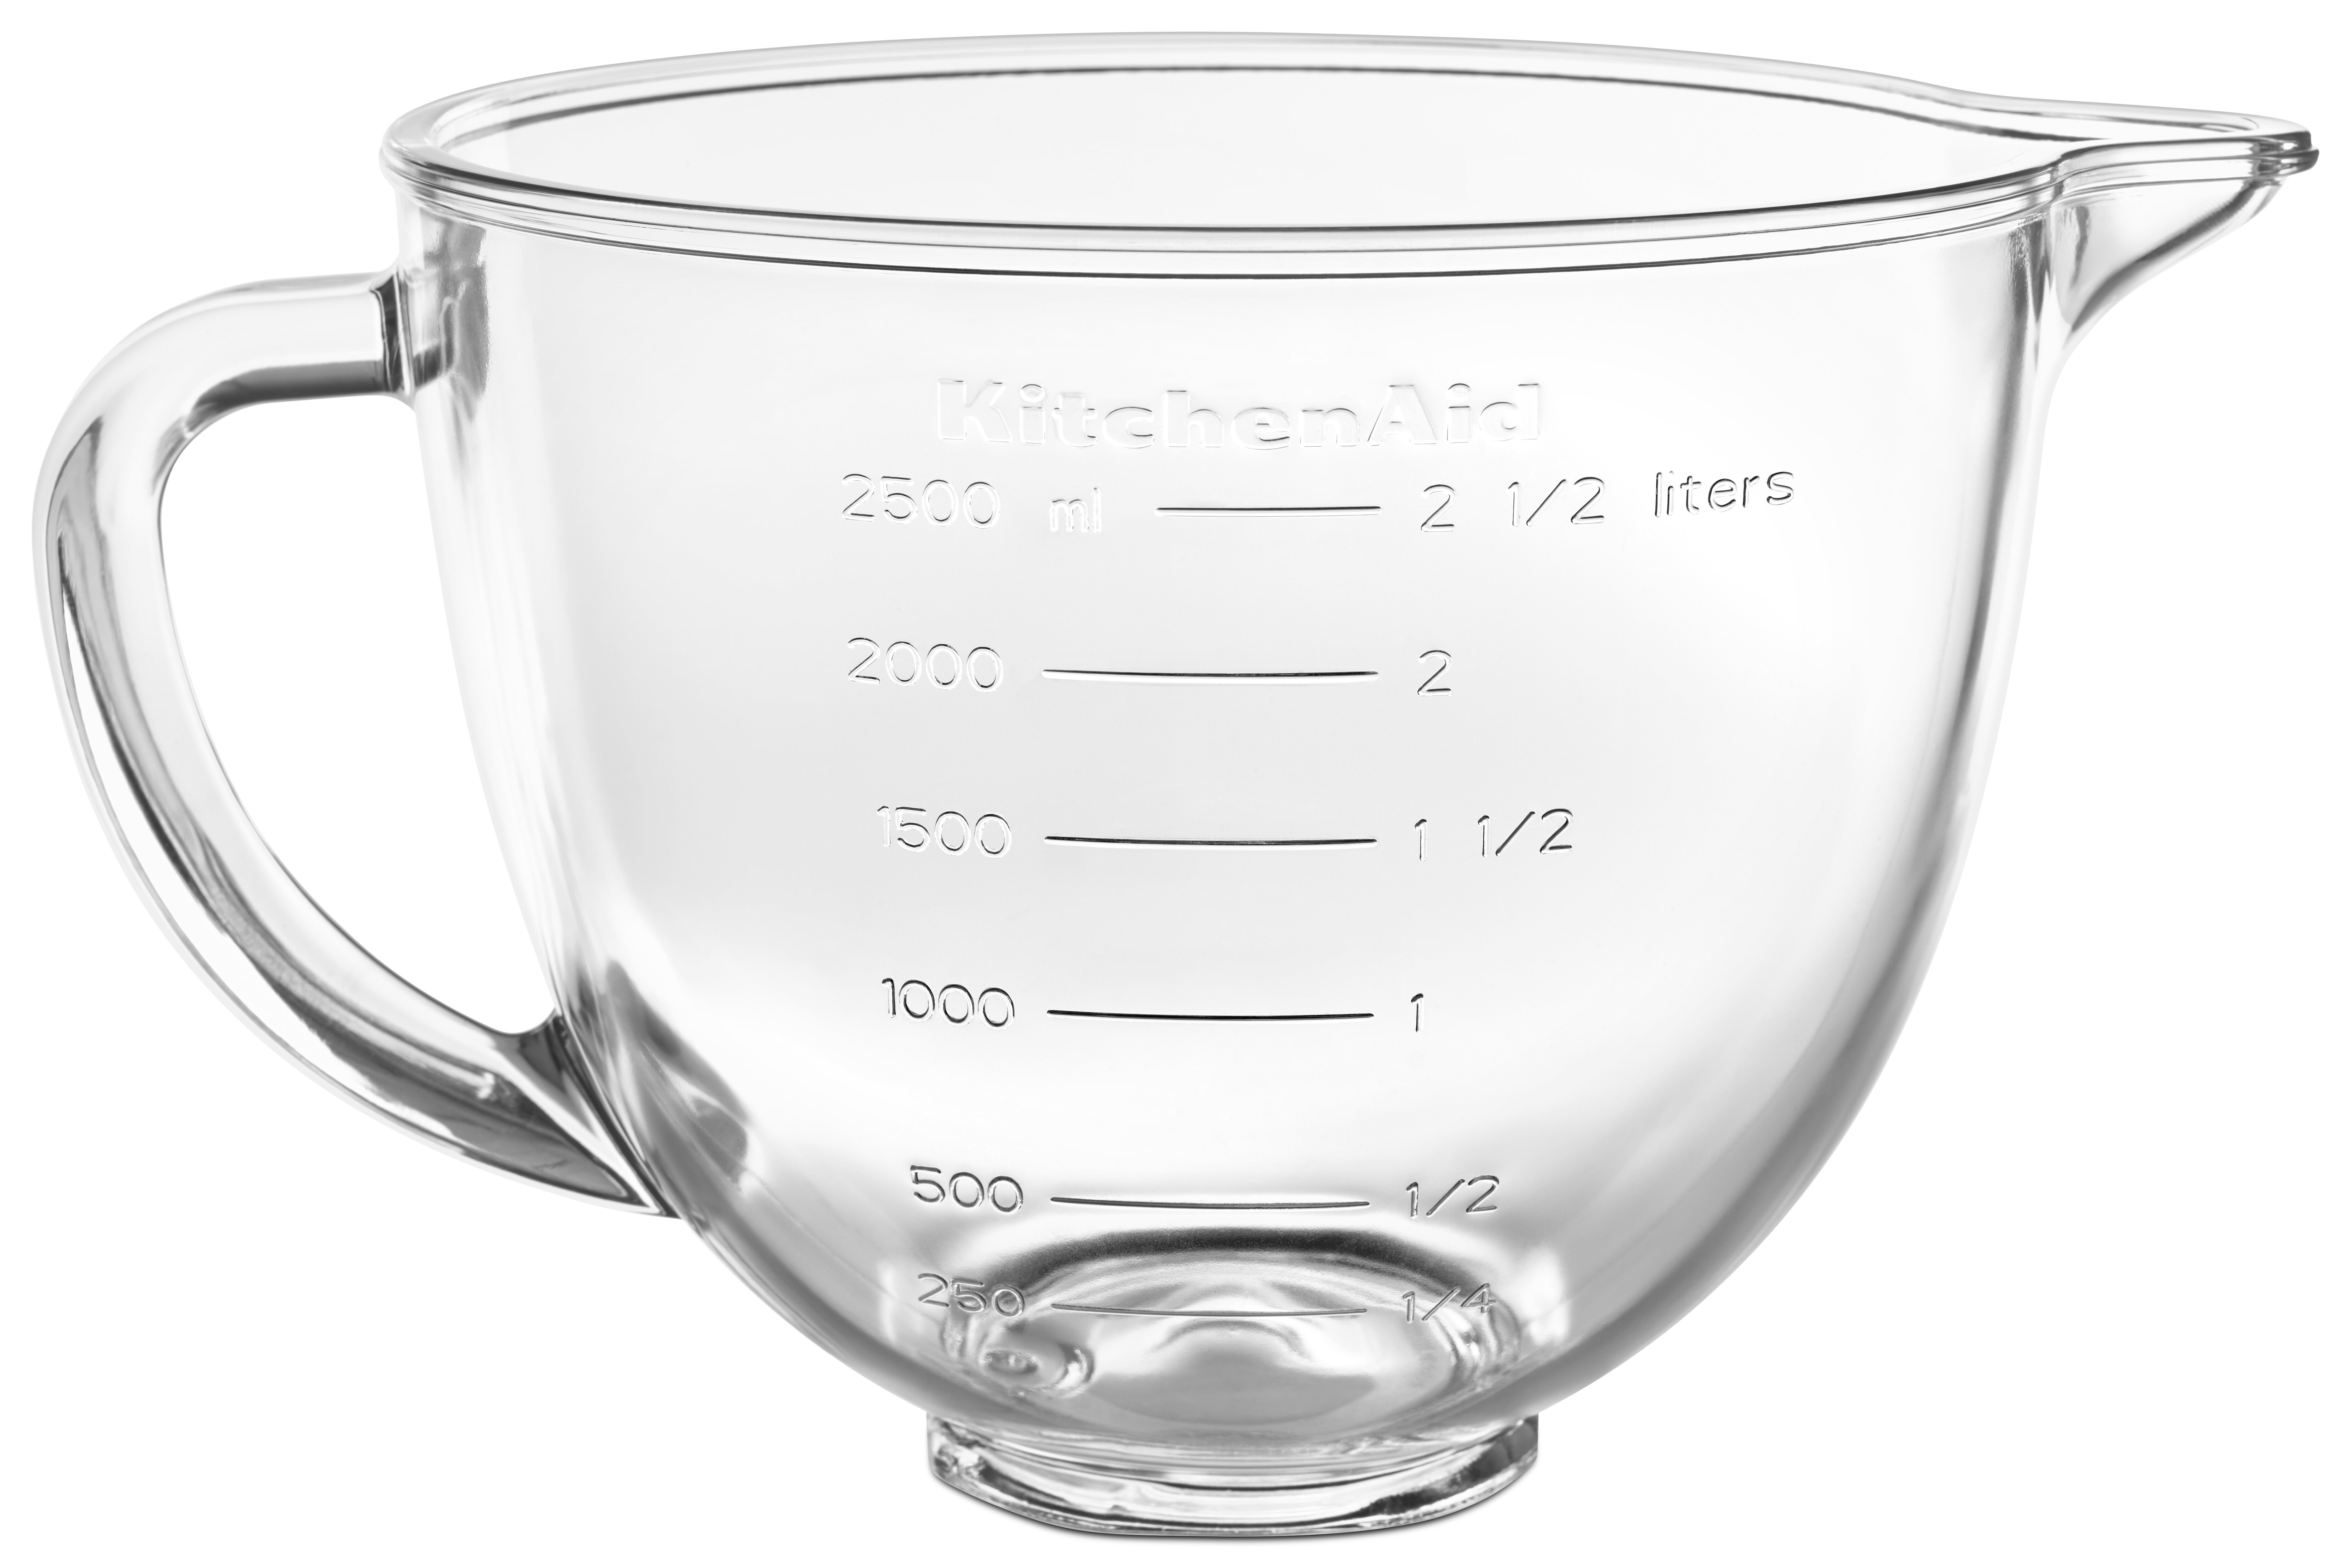 KitchenAid Stand Mixer Glass Bowl at